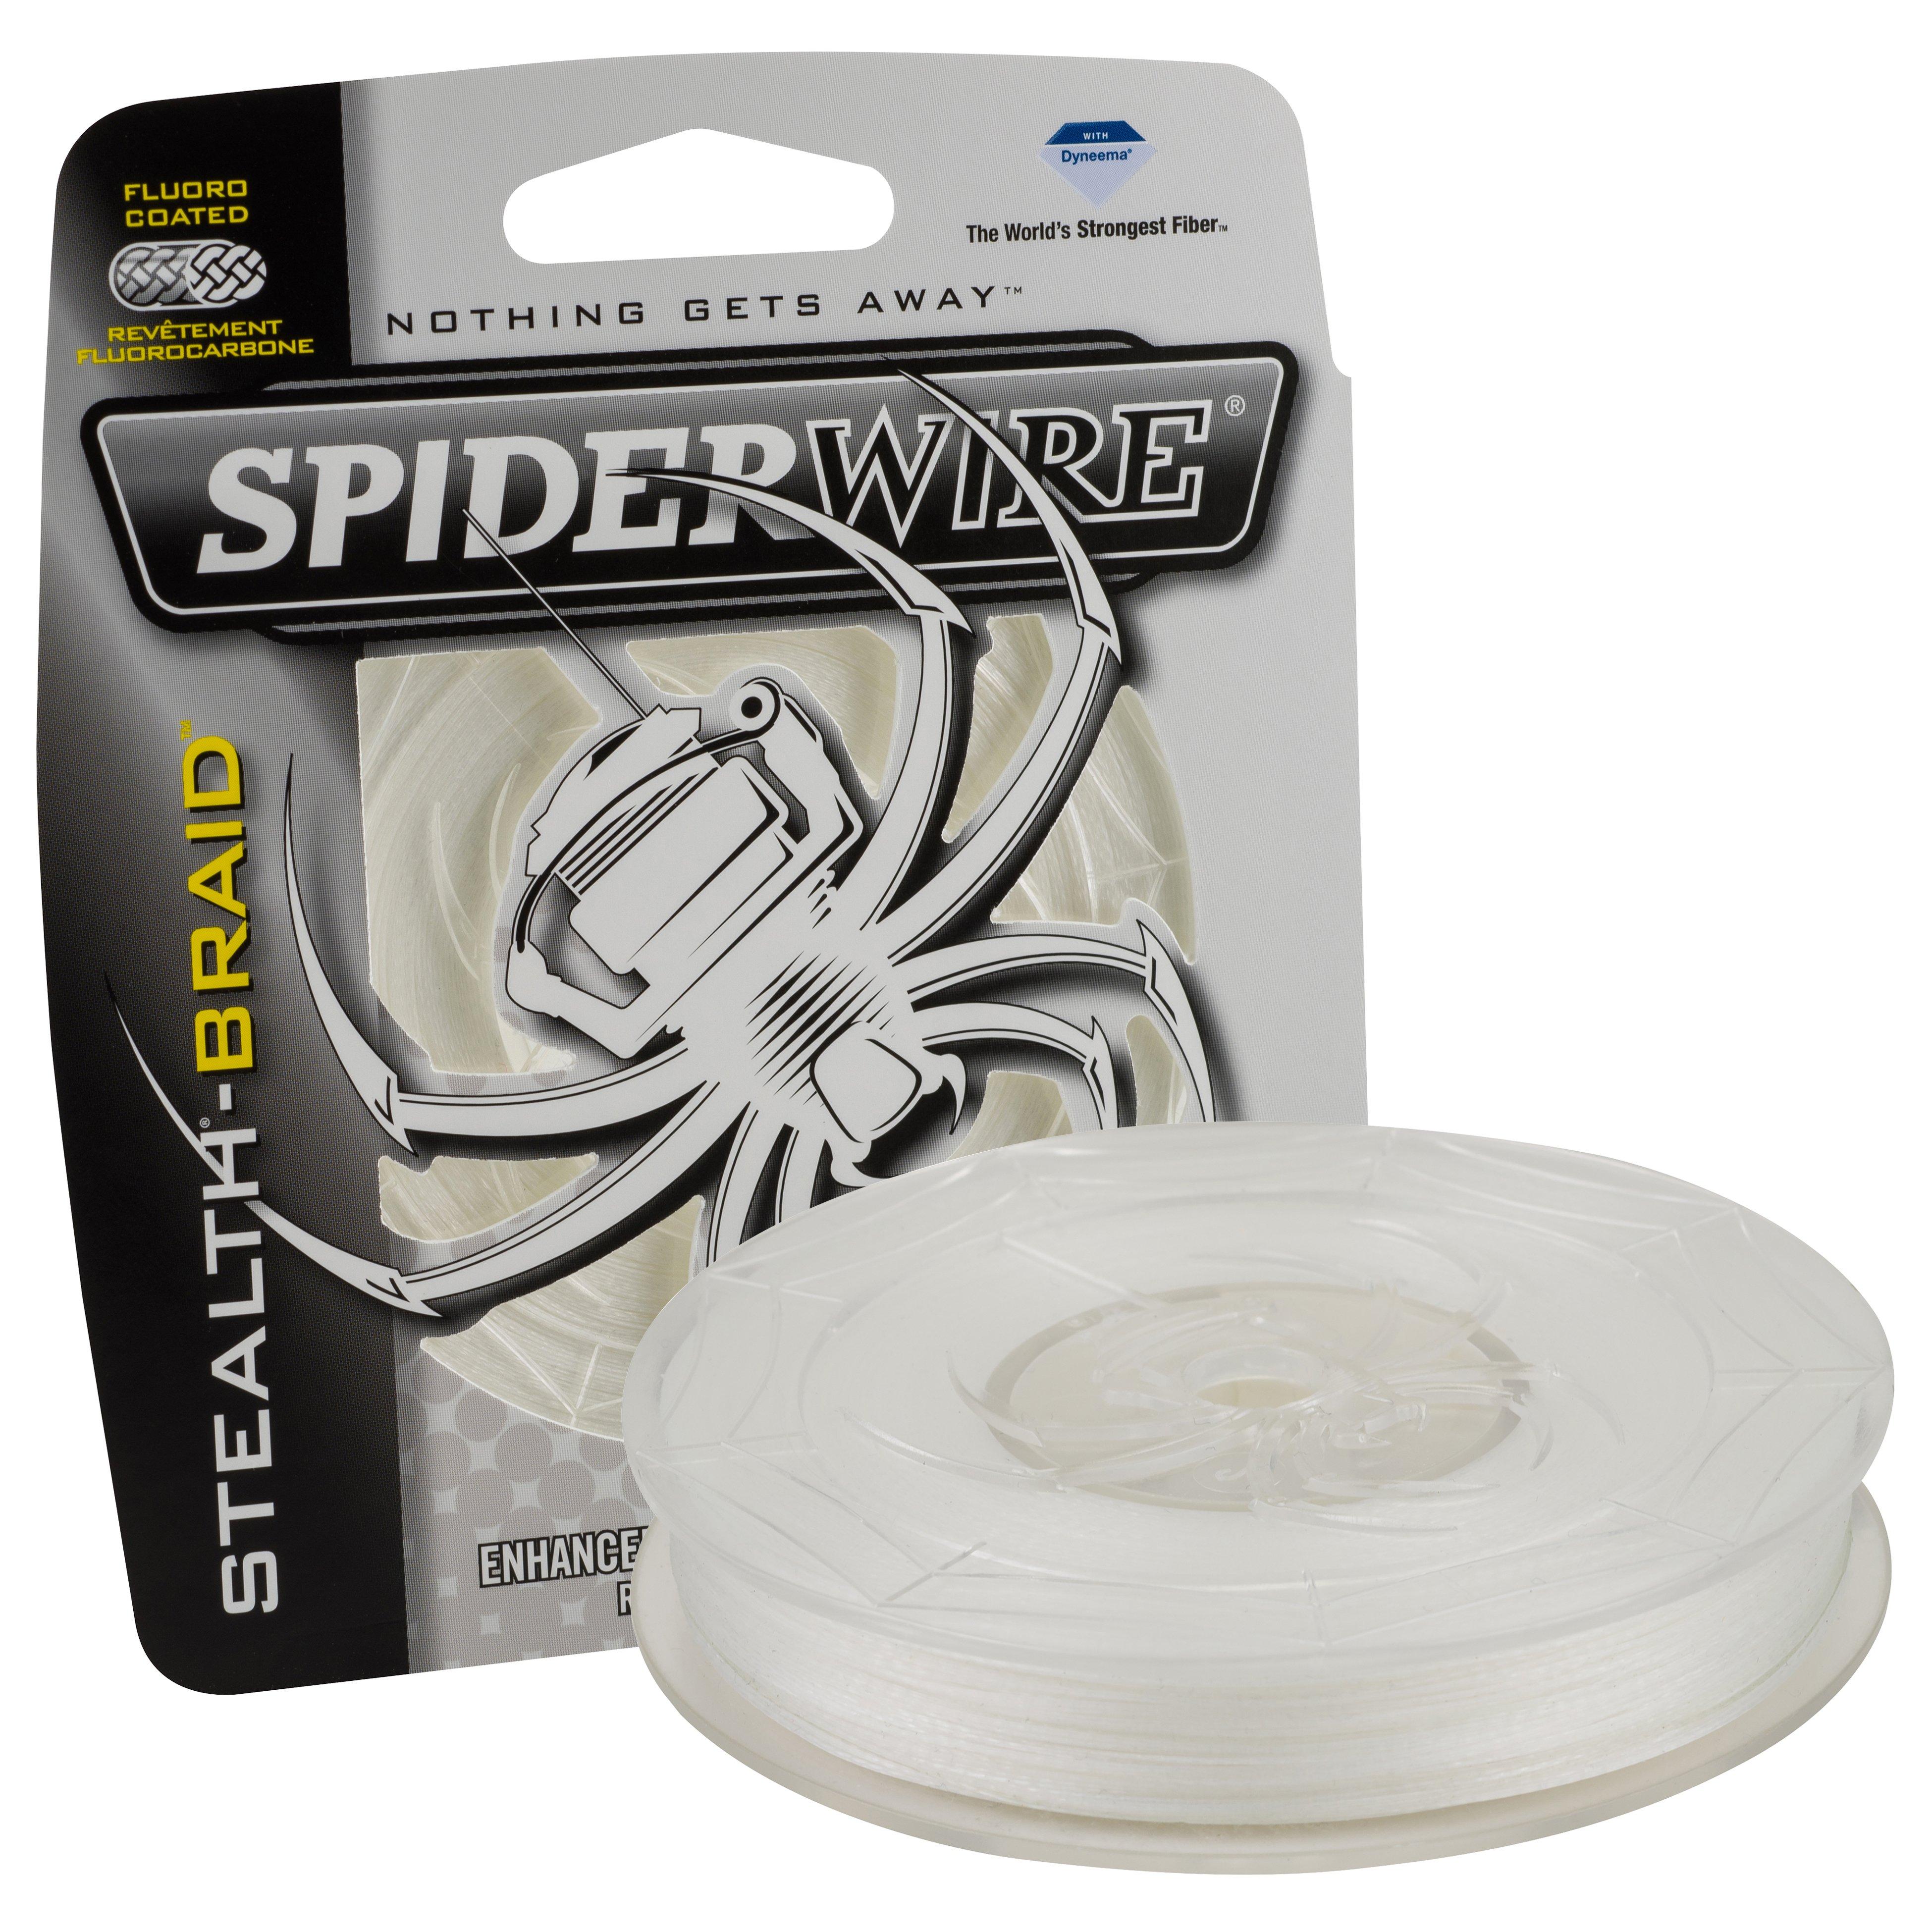 Spiderwire Stealth Translucent